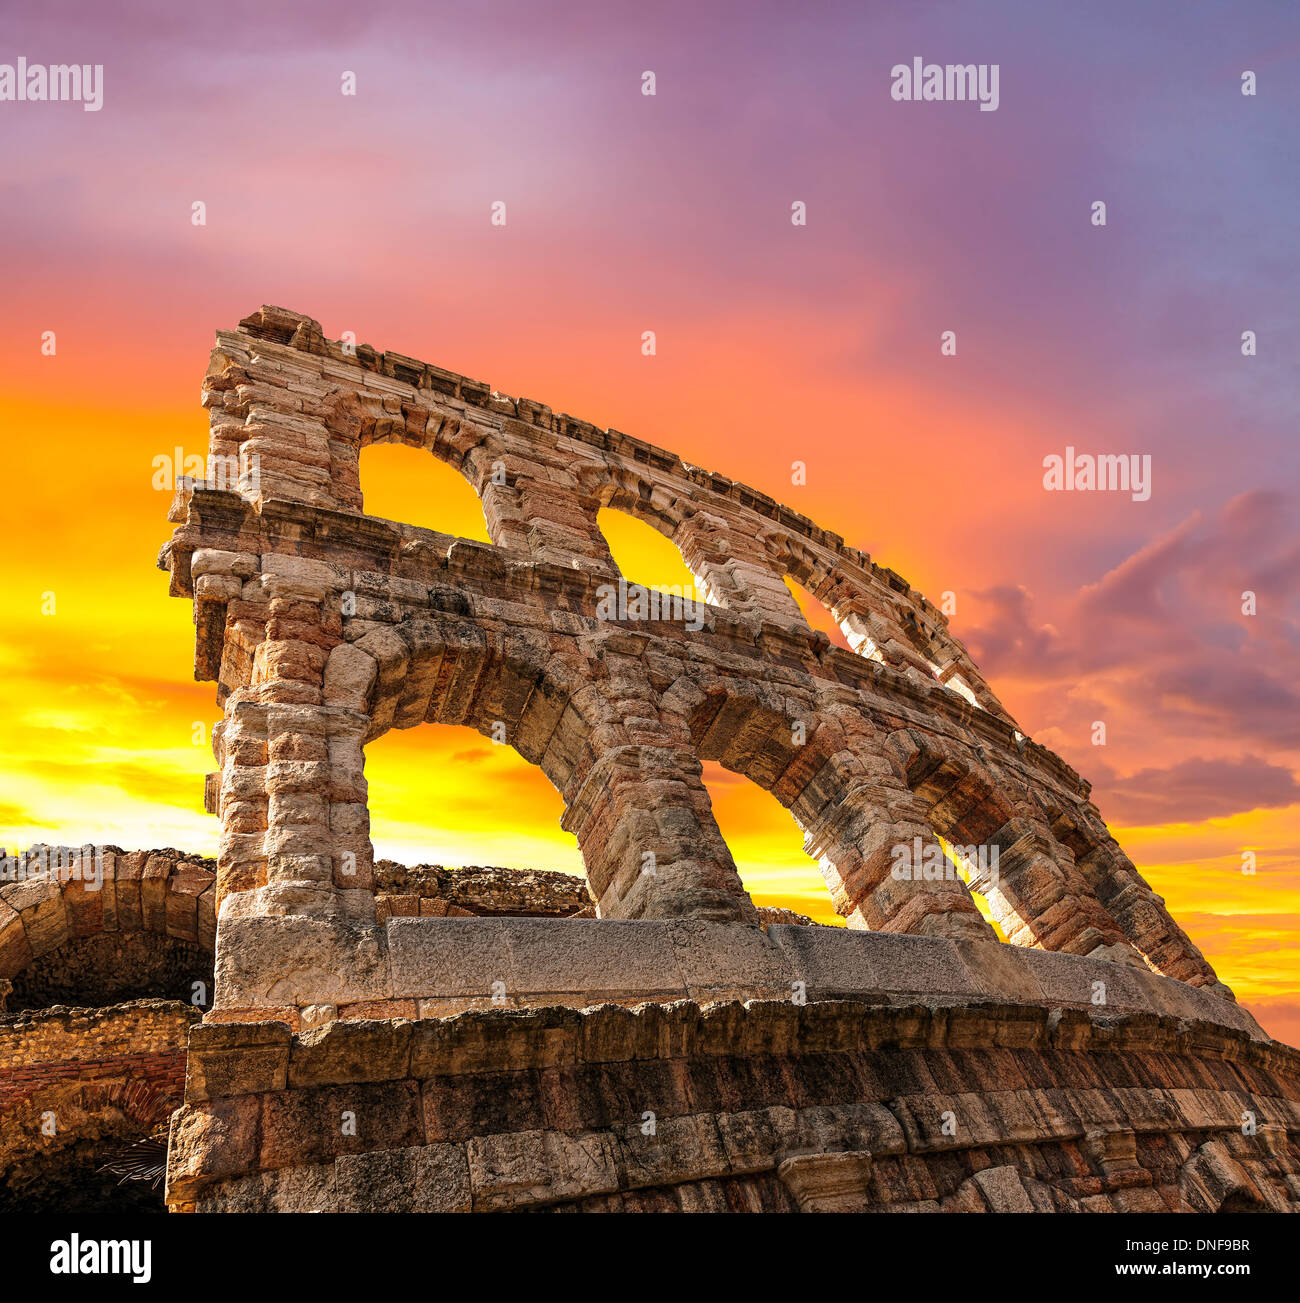 Le rovine dell'antica arena romana a Verona al tramonto. Foto Stock